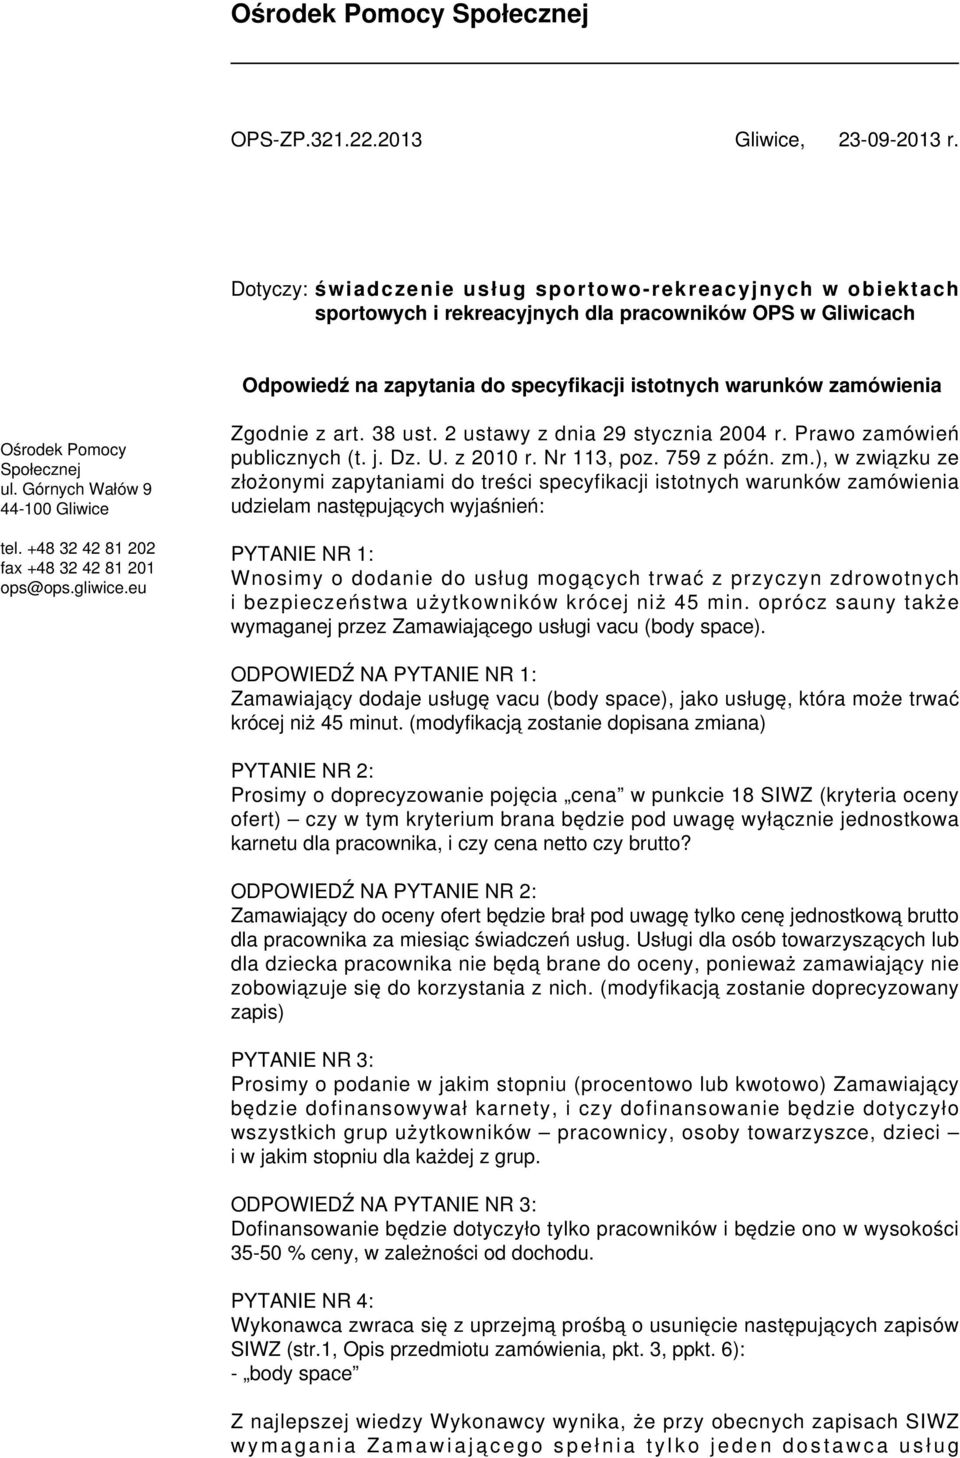 Pomocy Społecznej ul. Górnych Wałów 9 44-100 Gliwice tel. +48 32 42 81 202 fax +48 32 42 81 201 ops@ops.gliwice.eu Zgodnie z art. 38 ust. 2 ustawy z dnia 29 stycznia 2004 r.